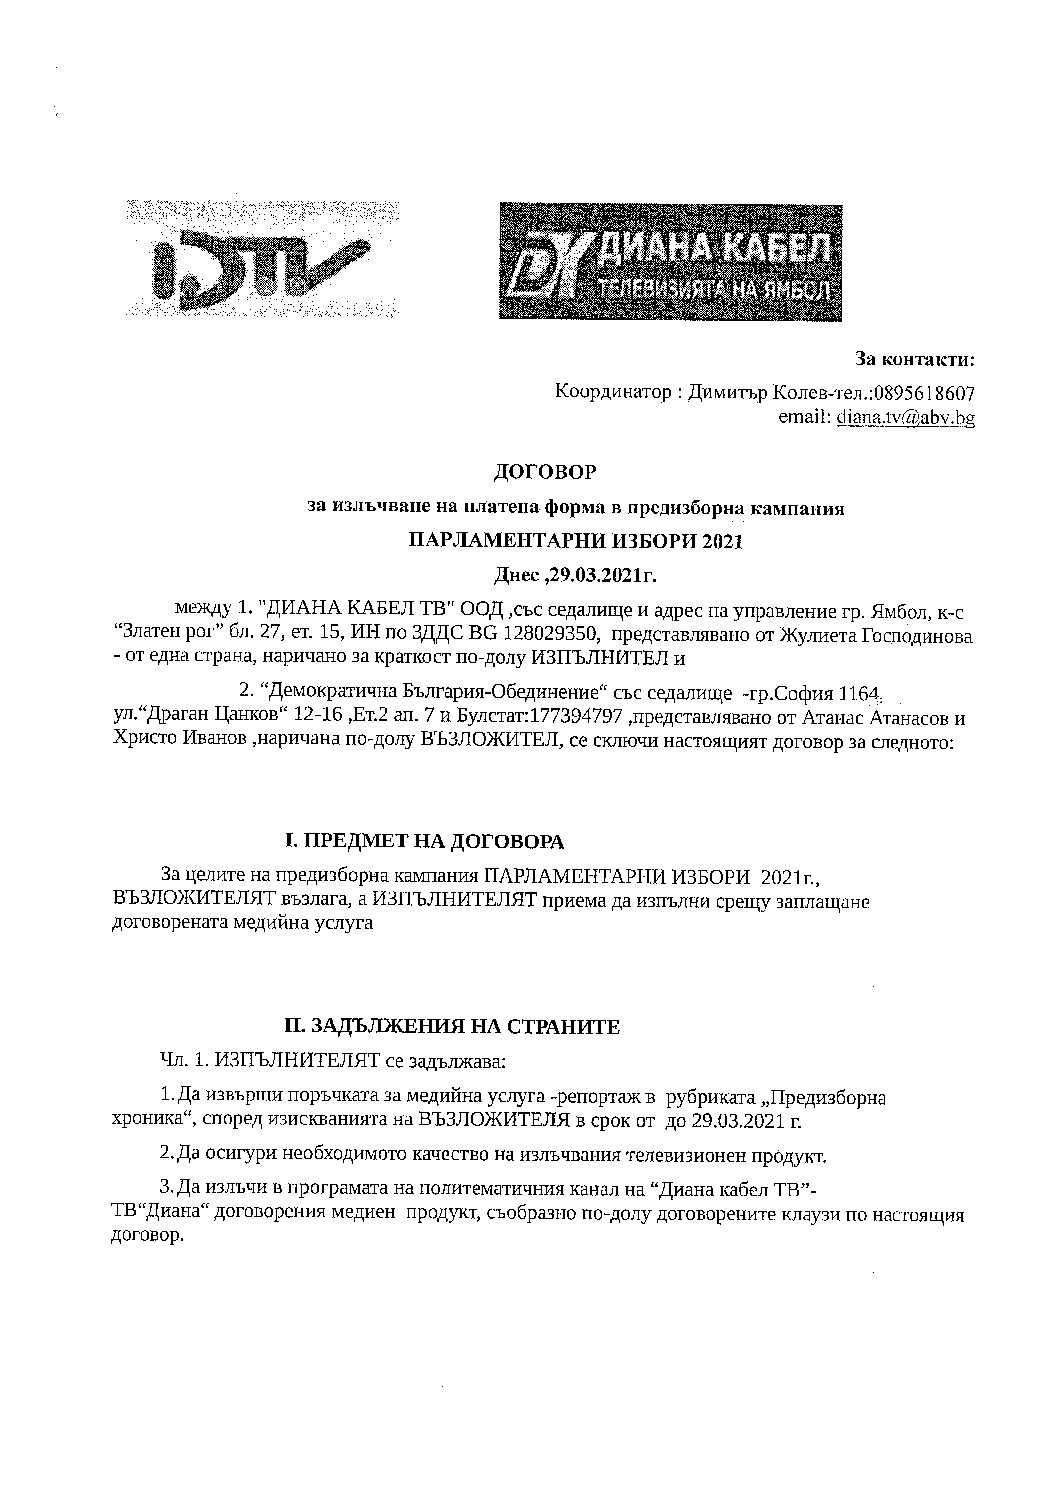 Парламентарни избори 2021-договор за доставка на медийни услуги с Демократична България  Обединение